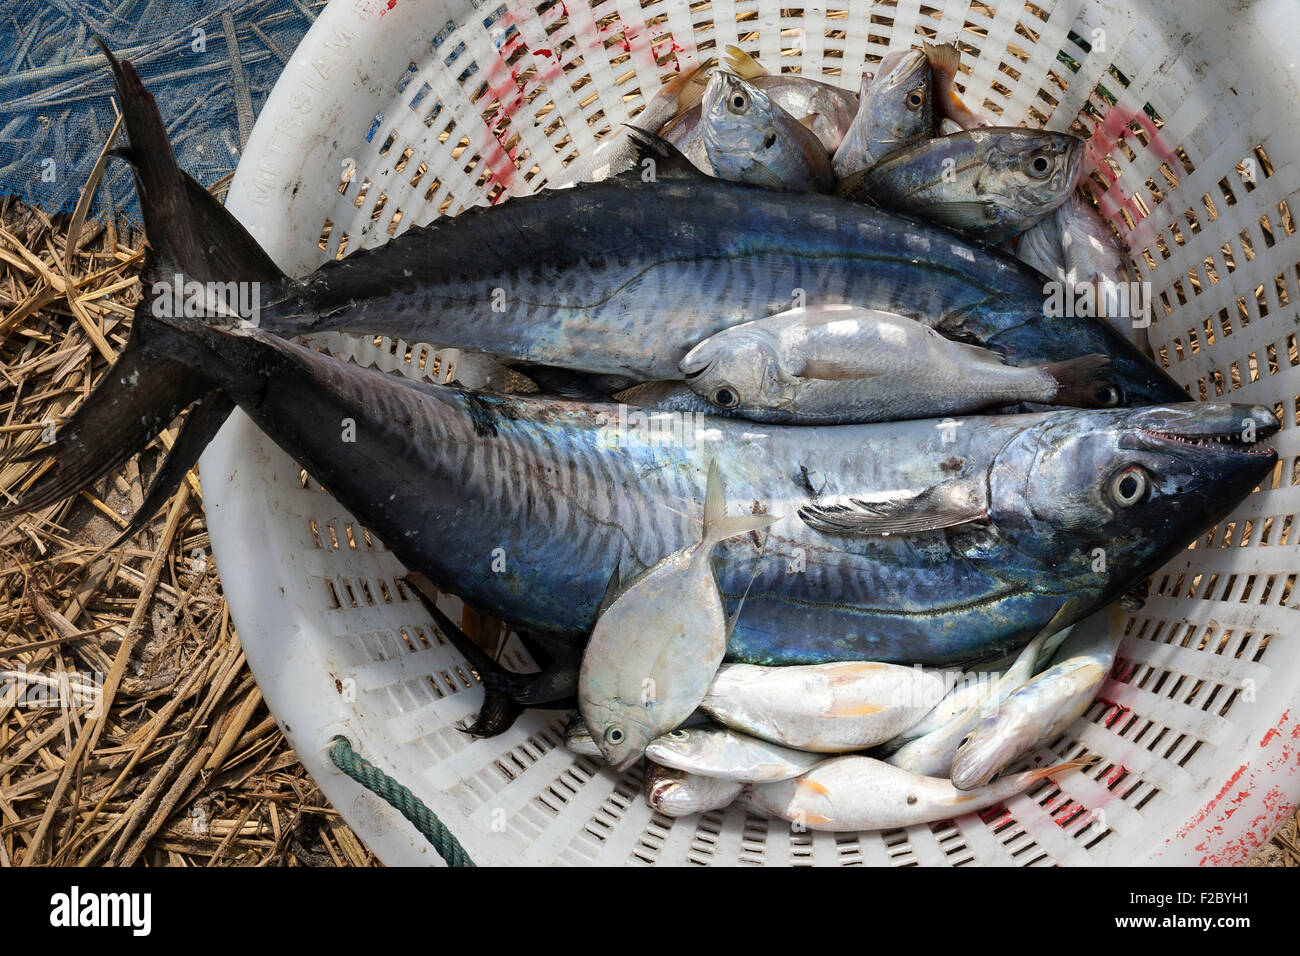 Les poissons fraîchement pêchés dans un panier, le maquereau et les petits poissons, village de pêcheurs de Ngapali, Thandwe, l'État de Rakhine, au Myanmar Banque D'Images